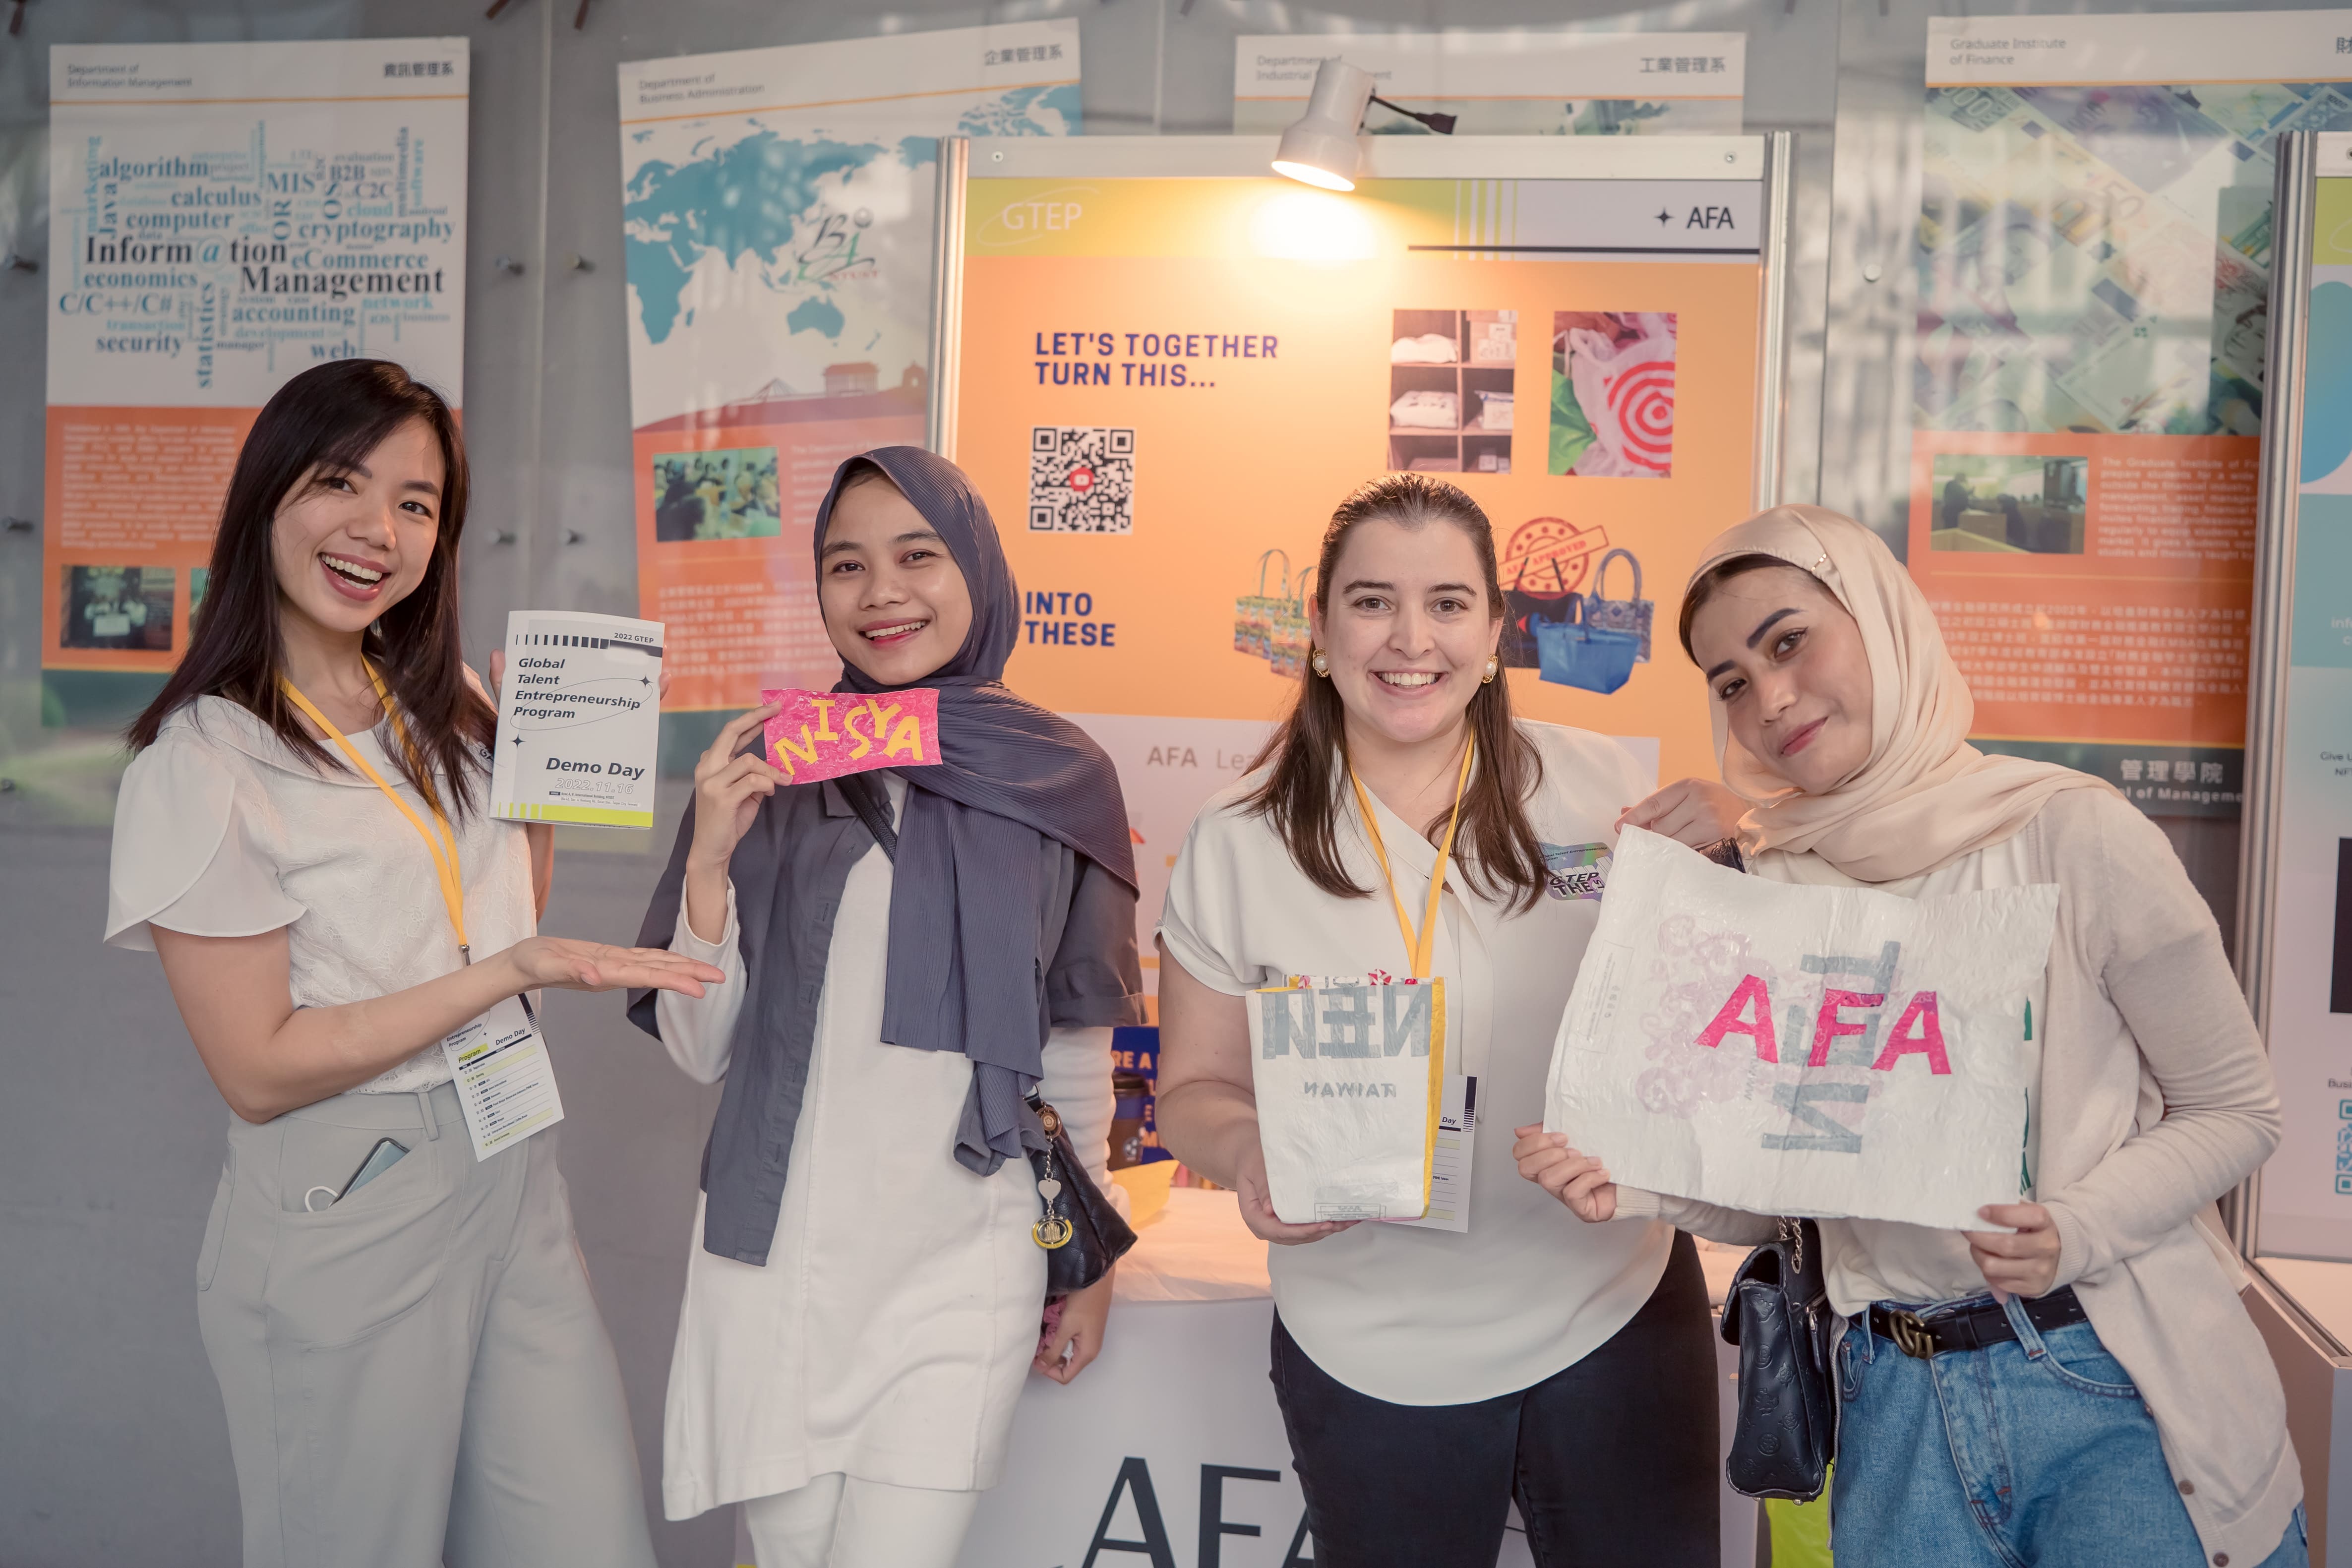 AFA為優選團隊，獲得撼訊科技股份有限公司贊助頒發2萬元創業獎金，創業主題是塑膠袋回收再製環保袋。